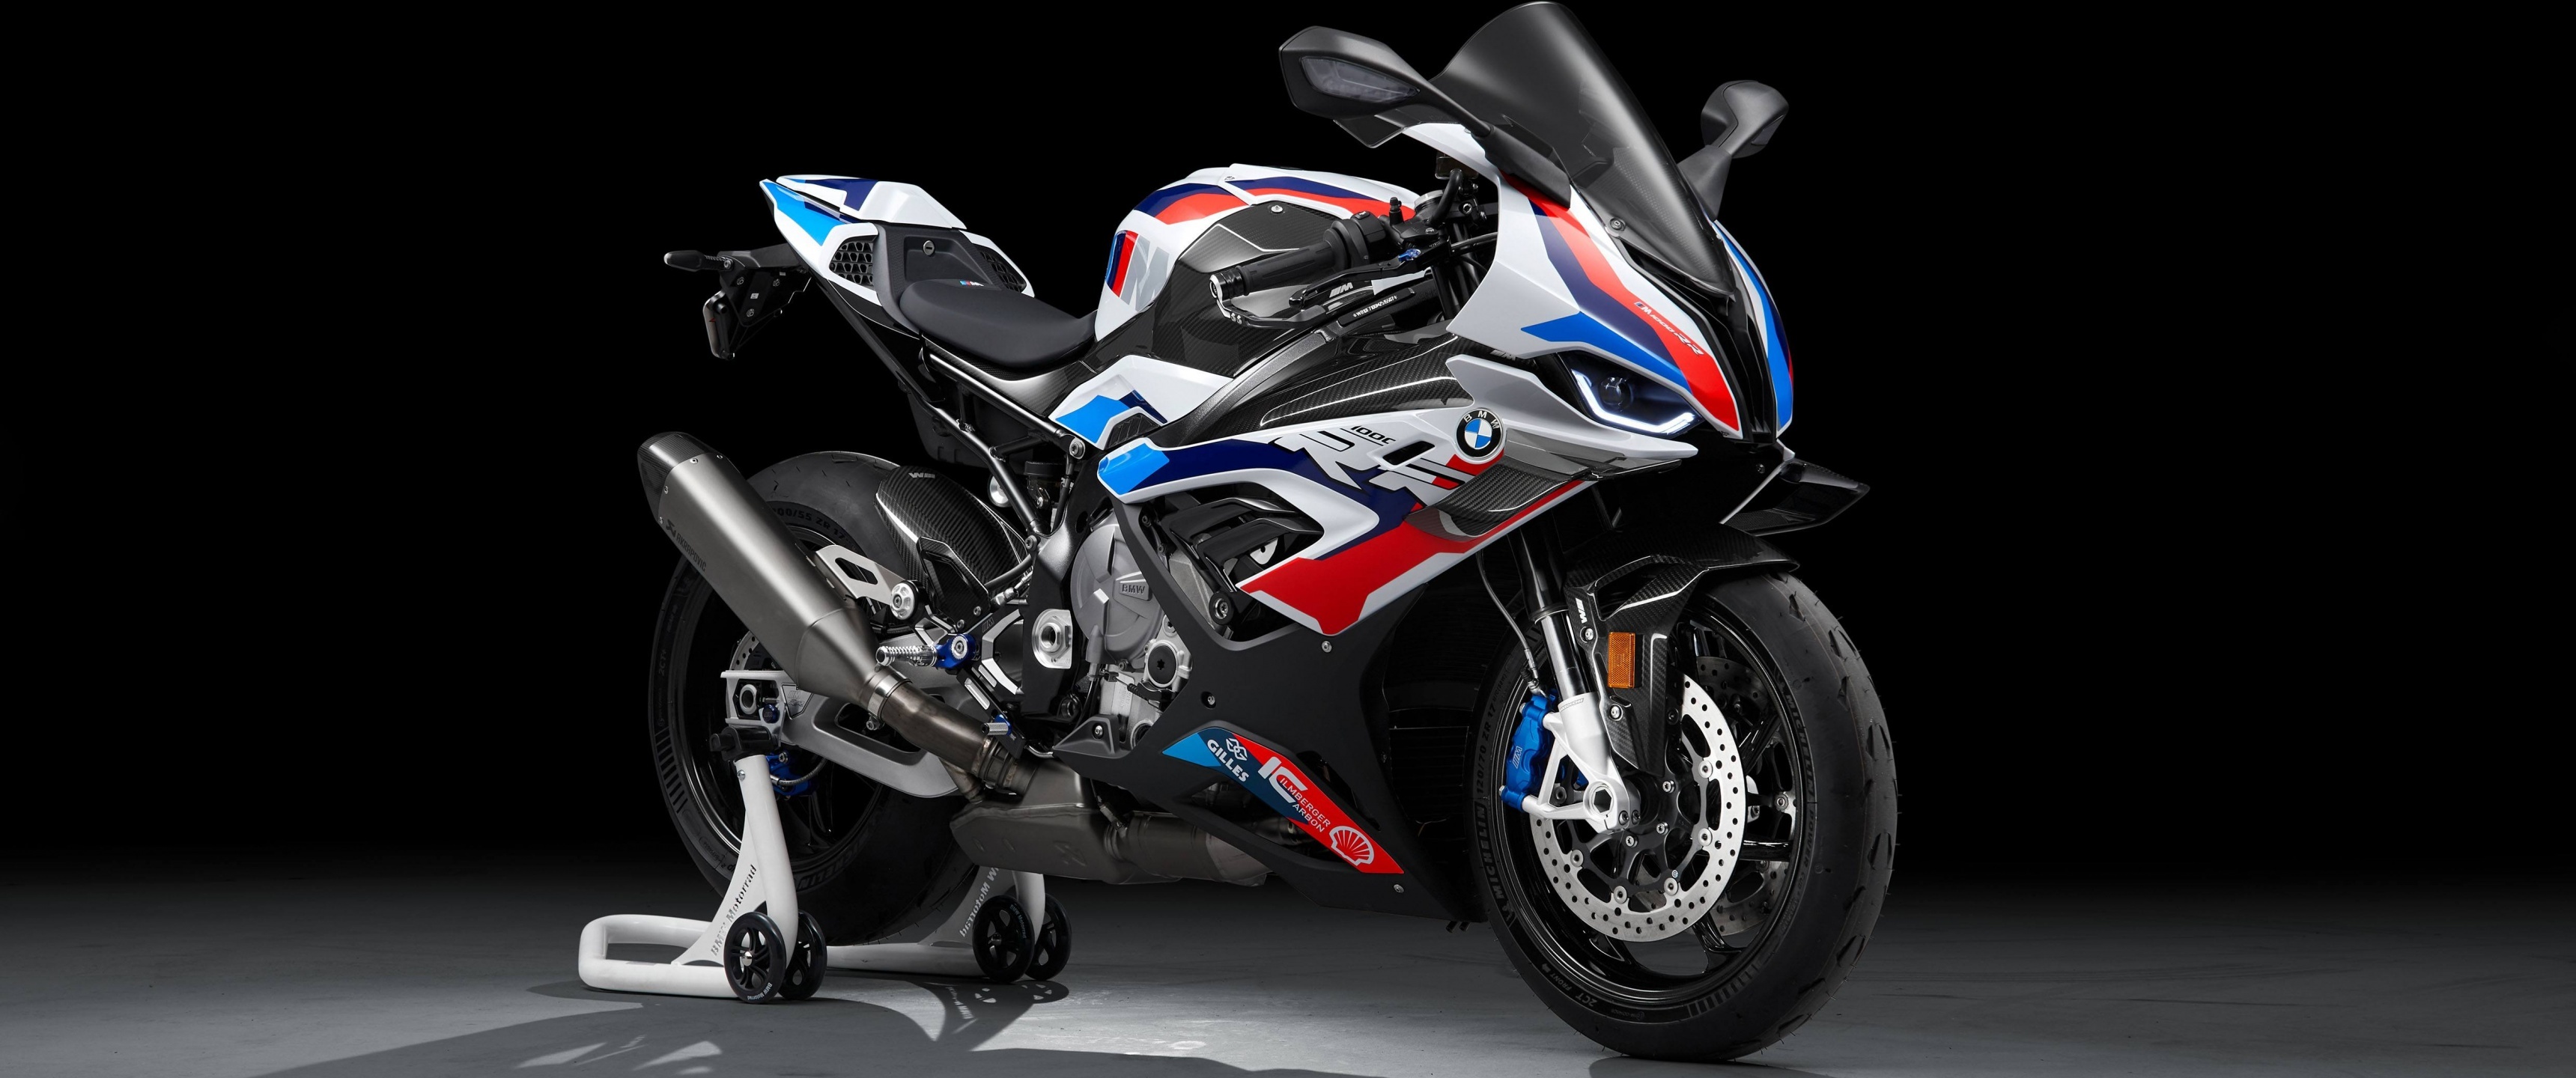 BMW M 1000 RR, 4k race bikes, Black background, 2021 bikes, 3440x1440 Dual Screen Desktop